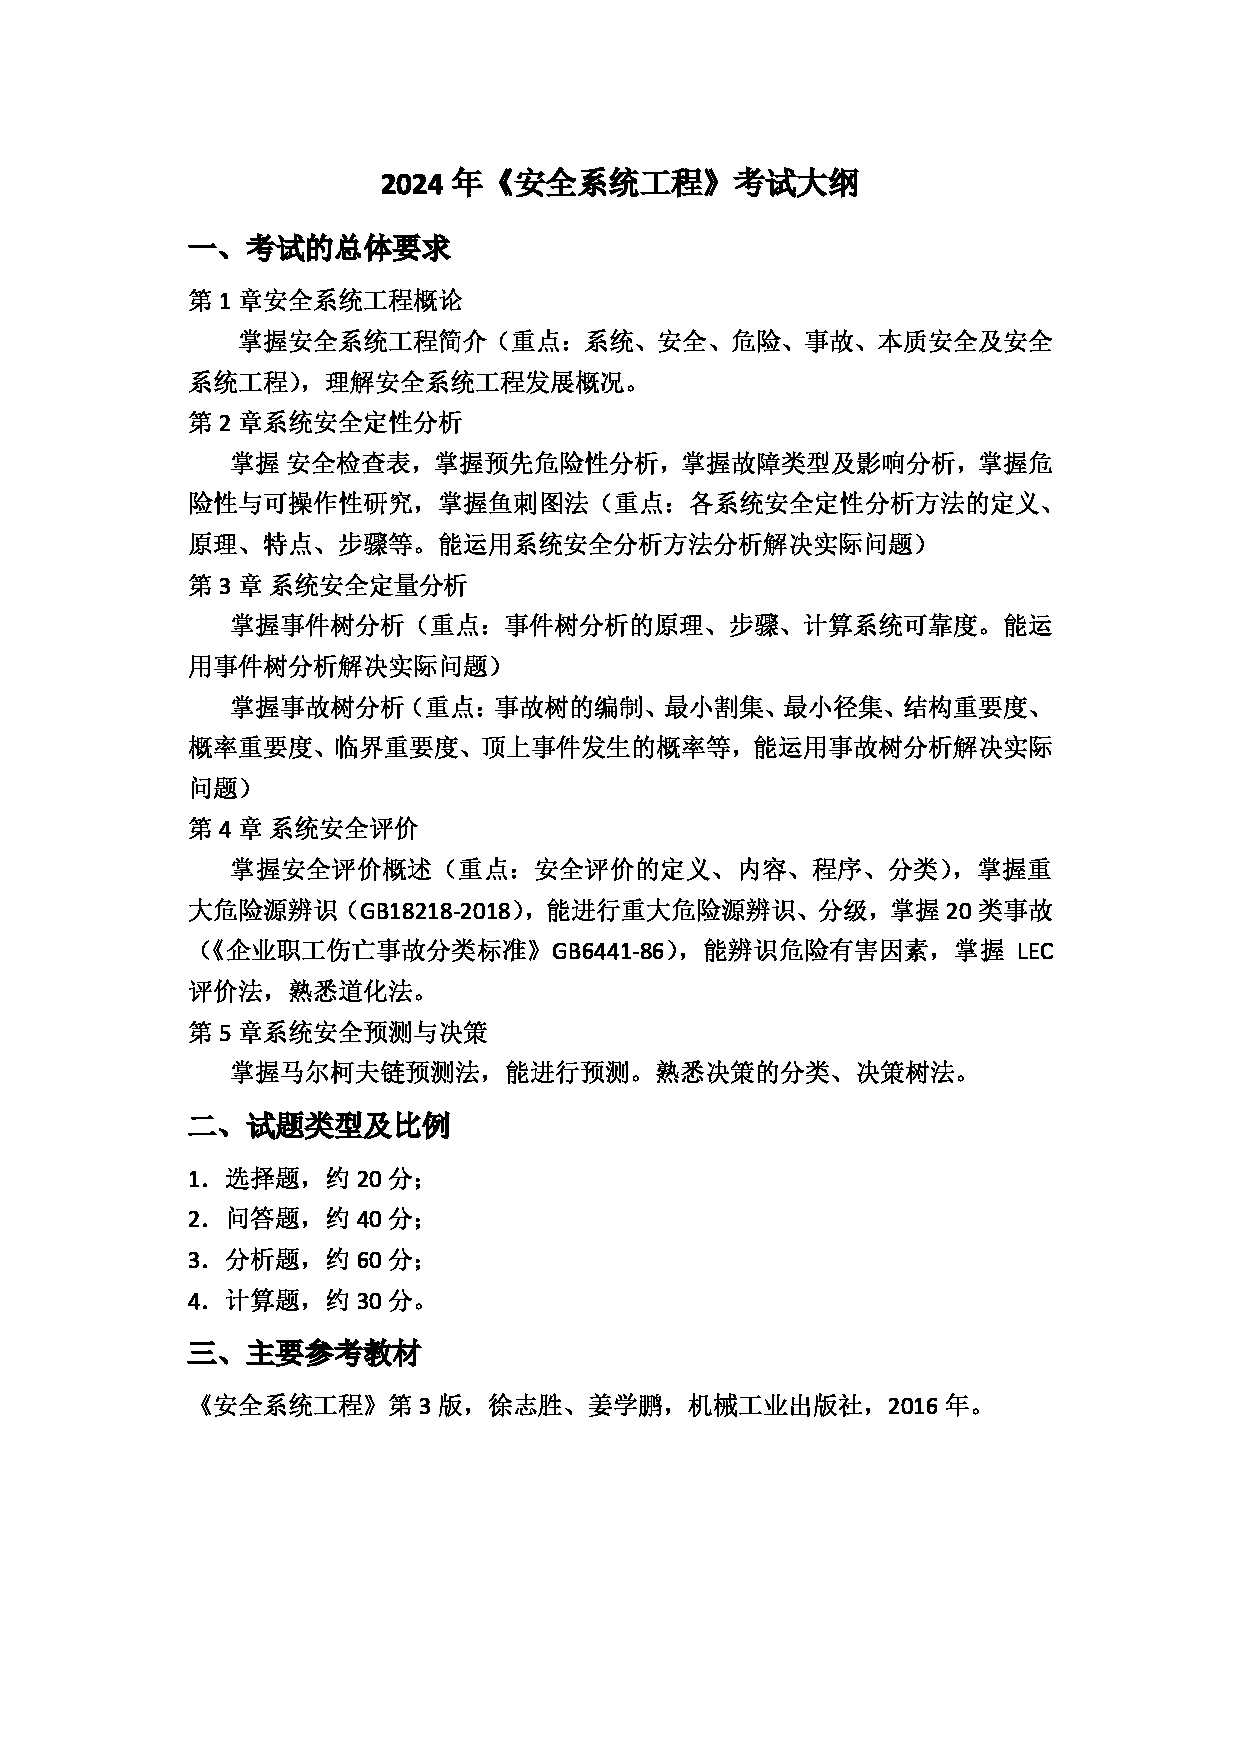 2024考研大纲：上海应用技术大学2024年考研科目 安全系统工程 考试大纲第1页